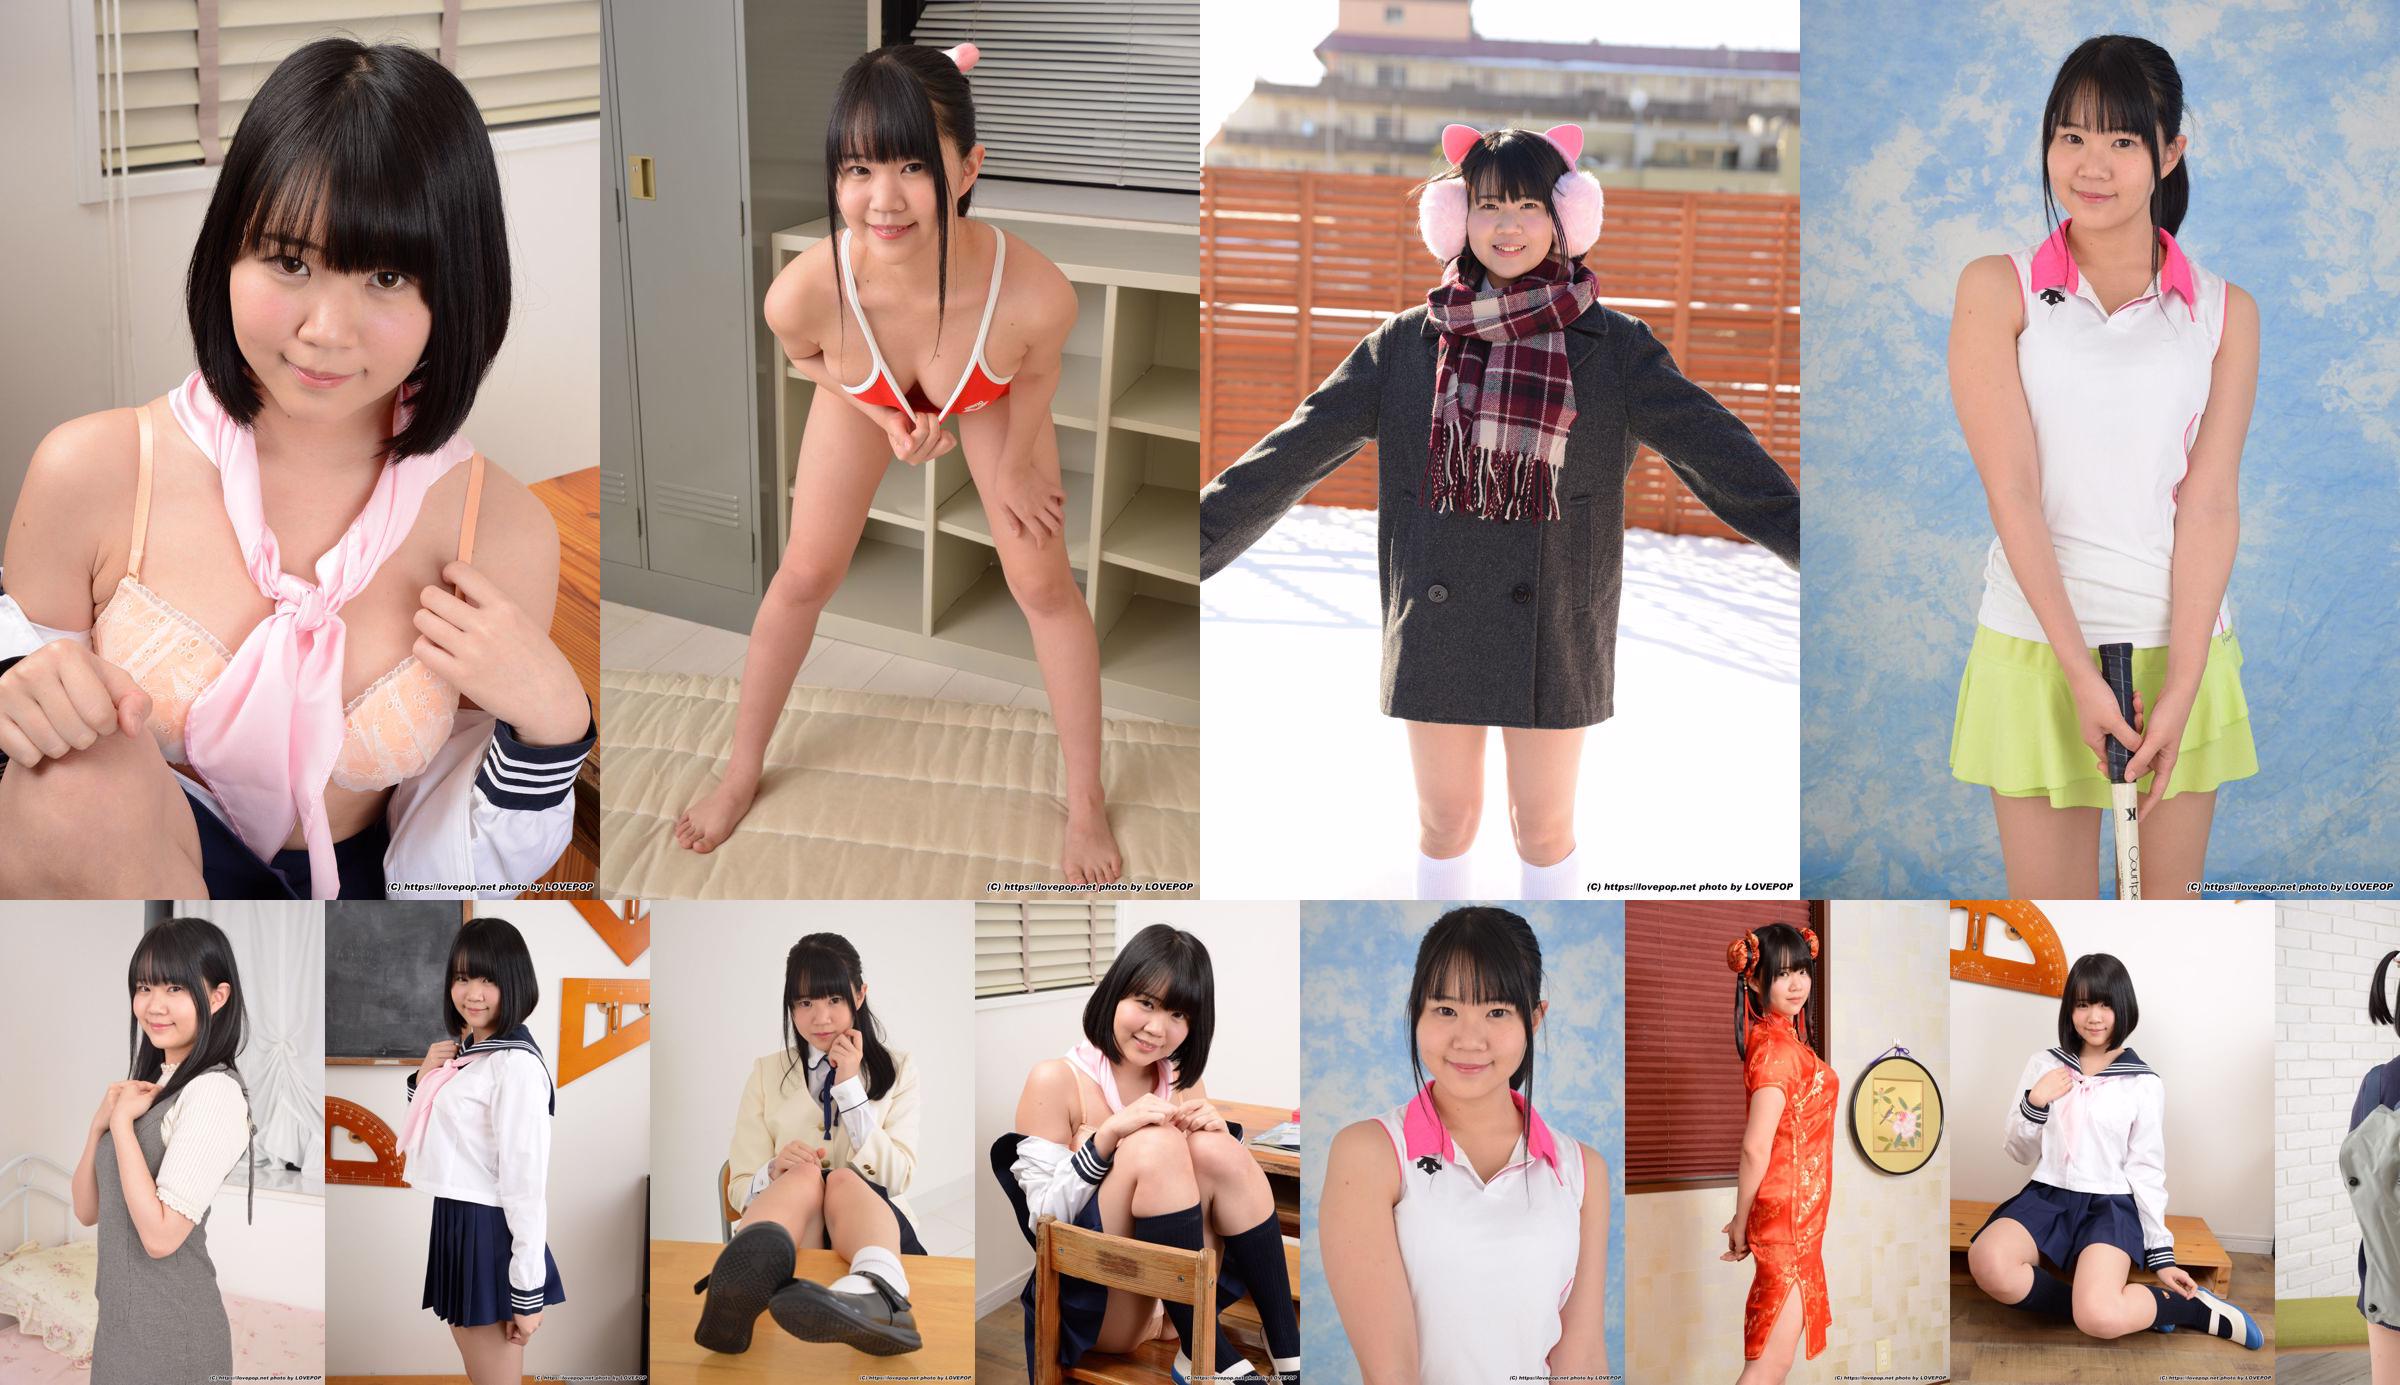 [LOVEPOP] Hinata Suzumori Suzumori Hinata/Suzumori ひなた Photoset 09 No.79a4e3 Strona 5